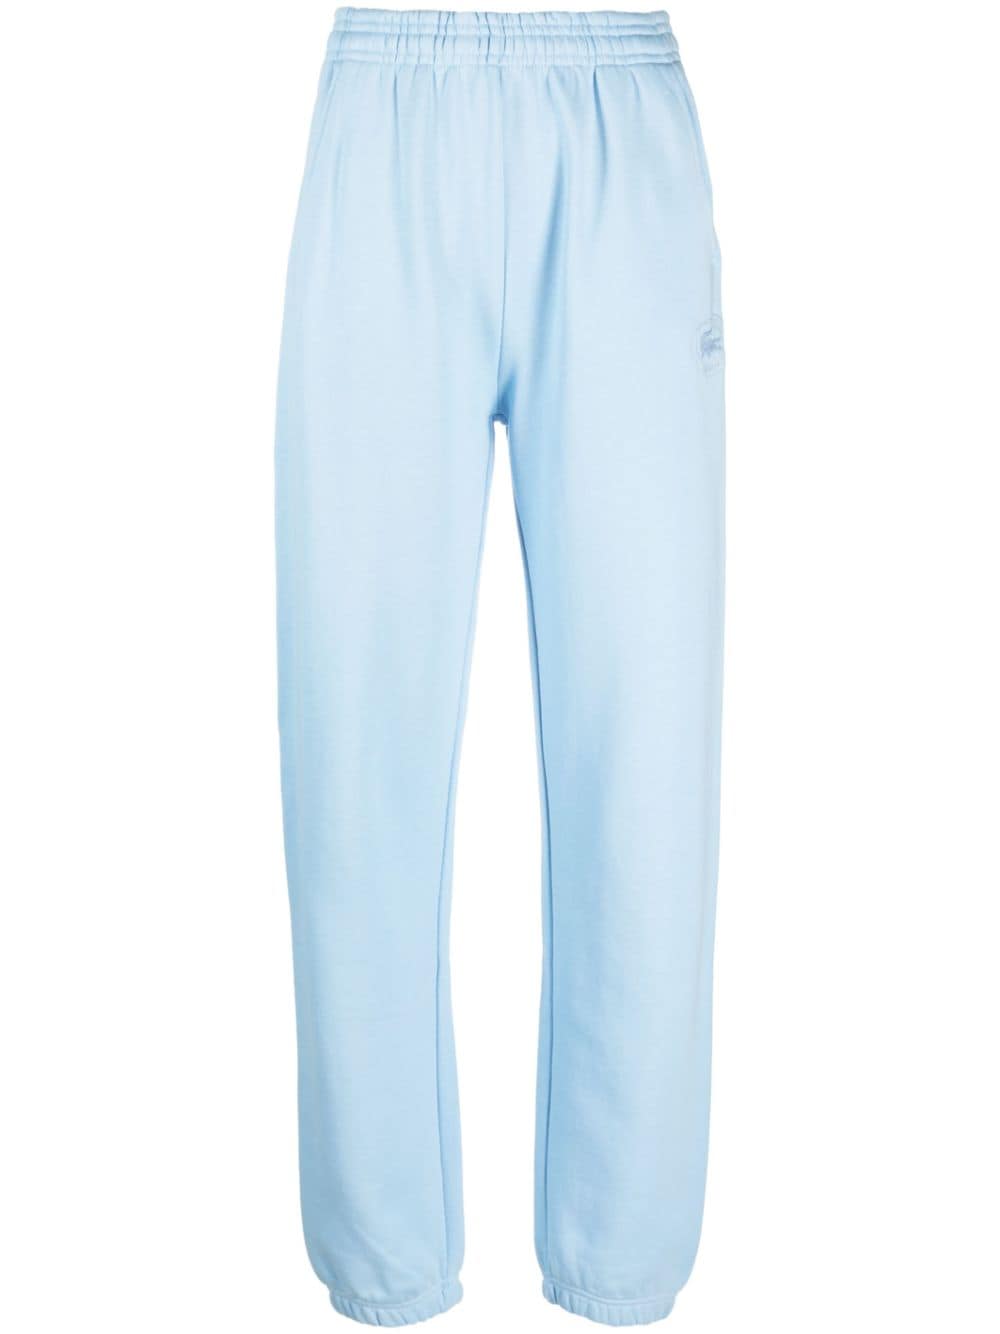 Sporty & Rich x Lacoste cotton track pants - Blue von Sporty & Rich